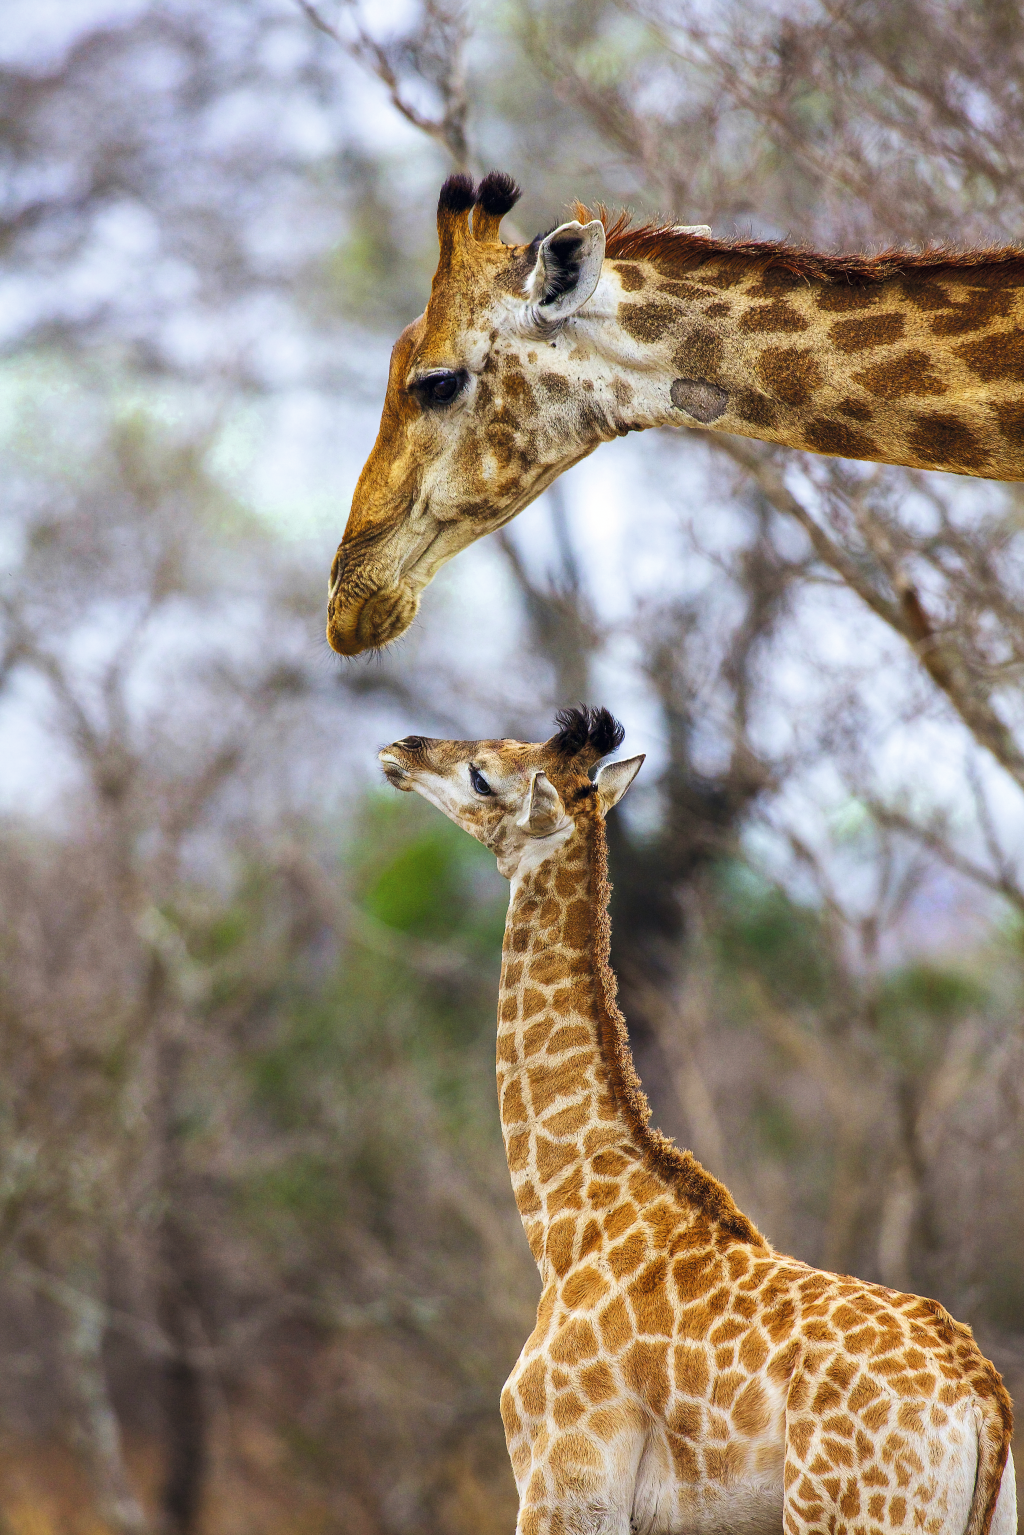 Girafa mãe e girafa filha no Kruger National Park, África do Sul